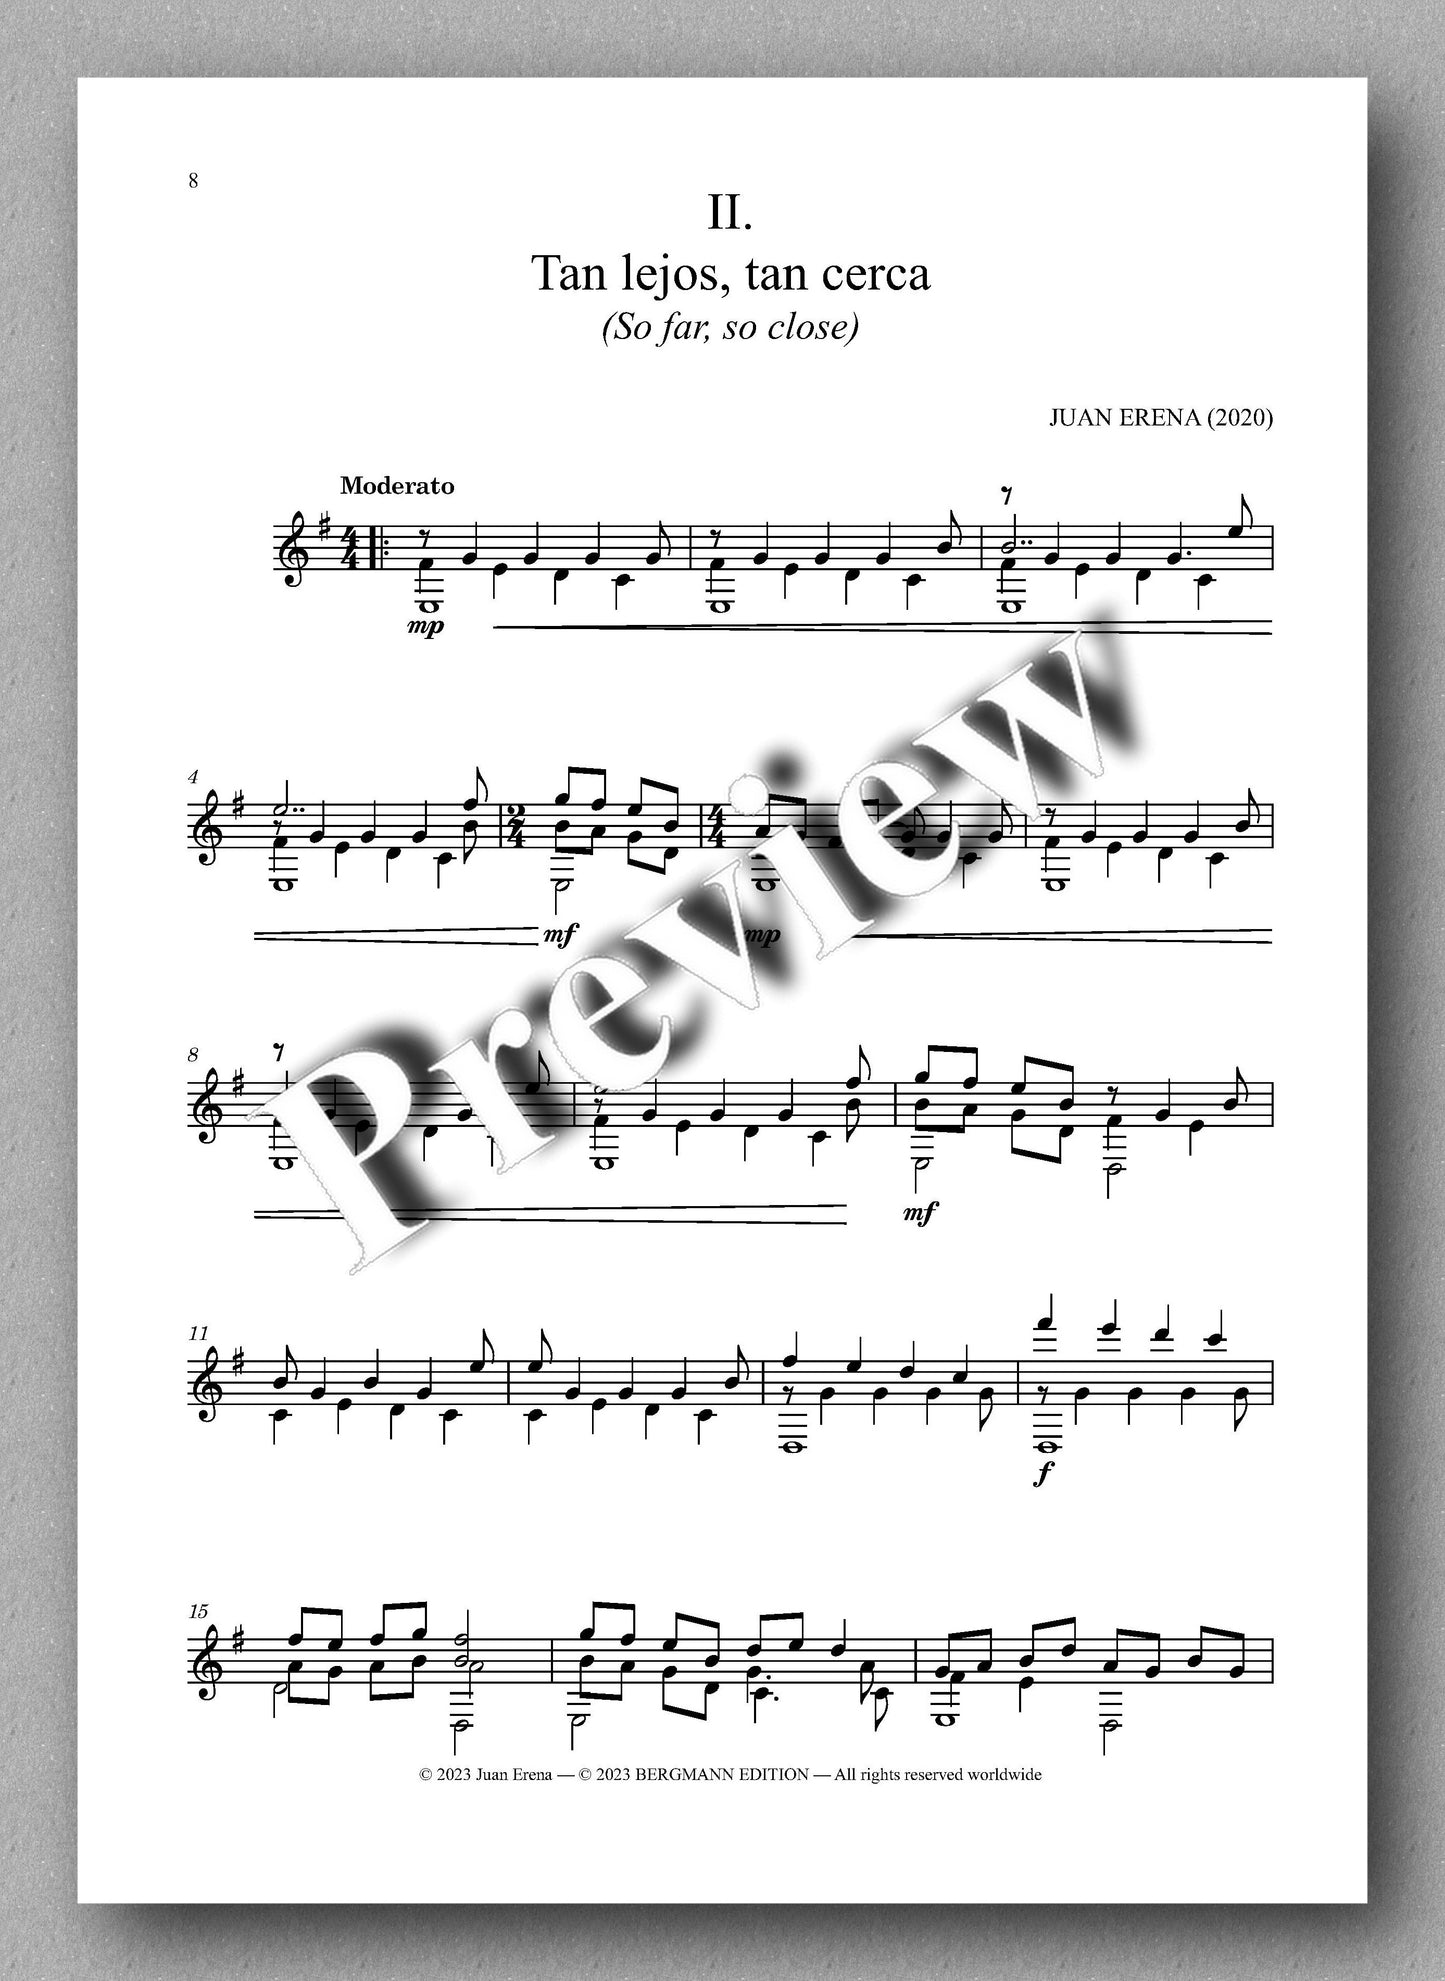 Juan Erena, Sonata IV, (Alas rotas - Broken Wings) - preview of the music score 2